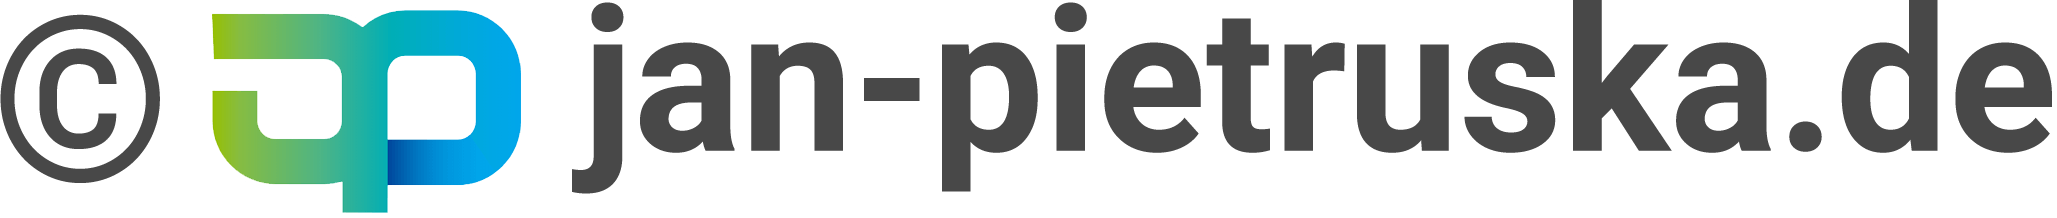 Jan Pietruska Internetagentur Logo